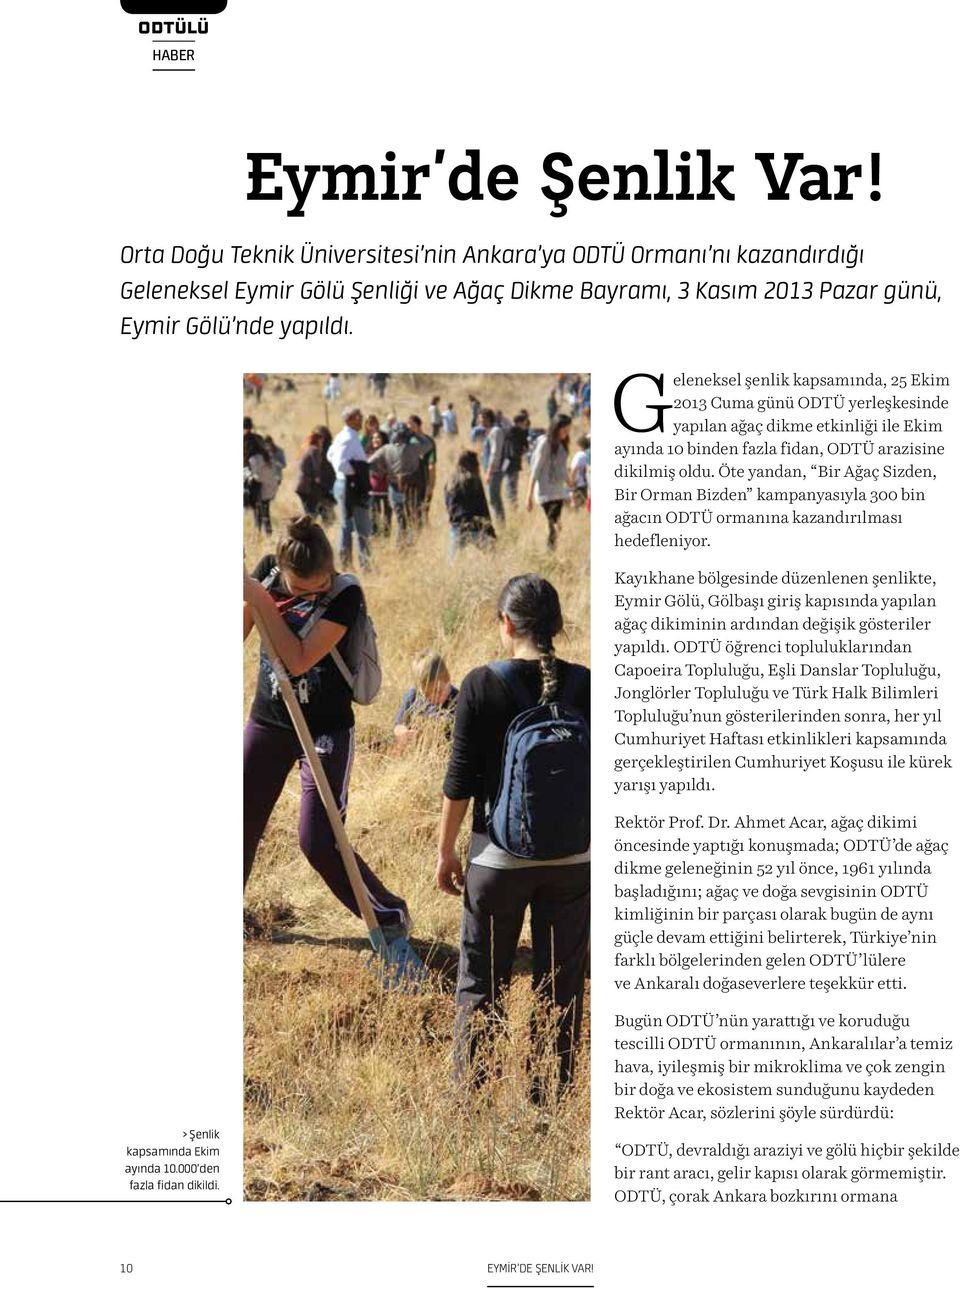 Geleneksel şenlik kapsamında, 25 Ekim 2013 Cuma günü ODTÜ yerleşkesinde yapılan ağaç dikme etkinliği ile Ekim ayında 10 binden fazla fidan, ODTÜ arazisine dikilmiş oldu.